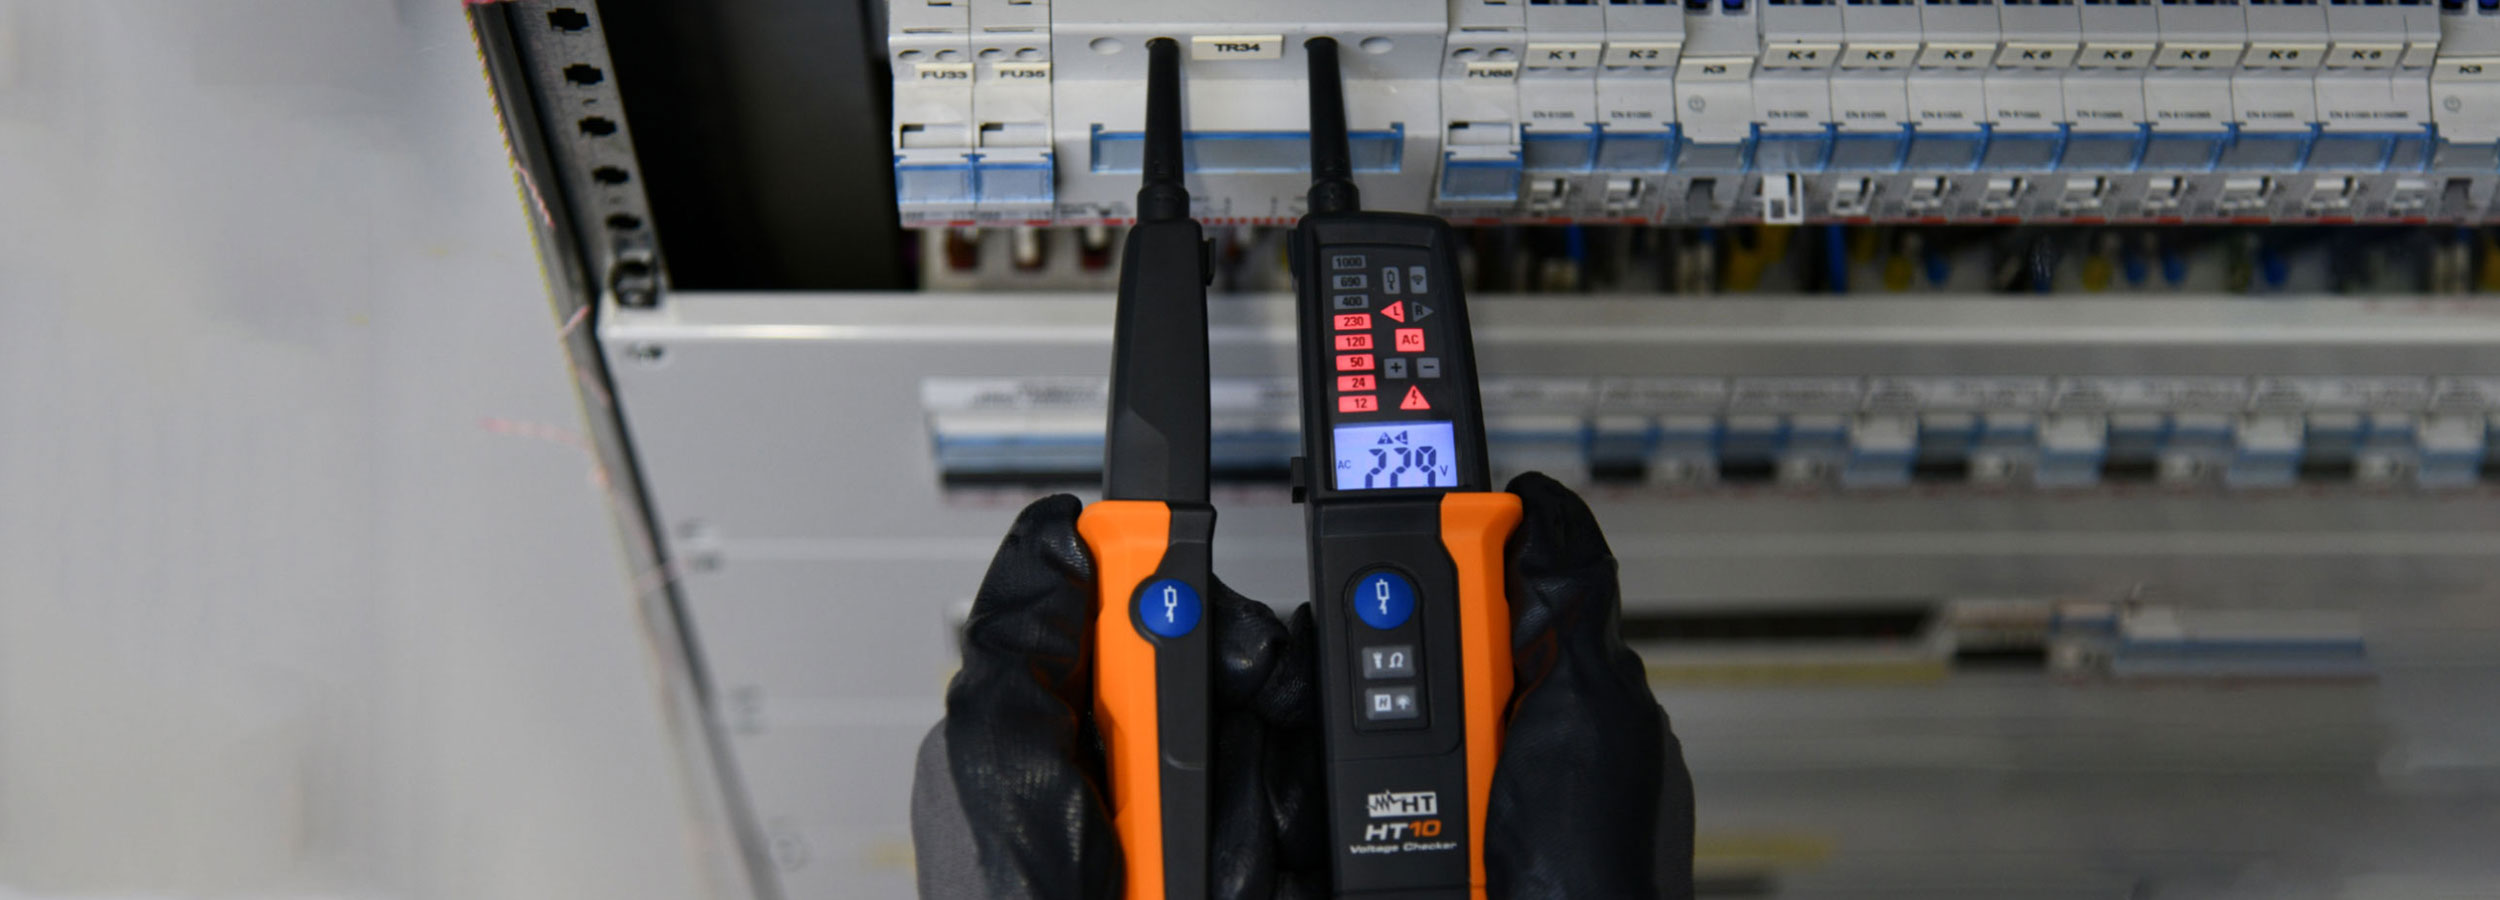 Produttore di strumenti di misura elettrici-ambientali e utensili per elettricisti | HT Italia